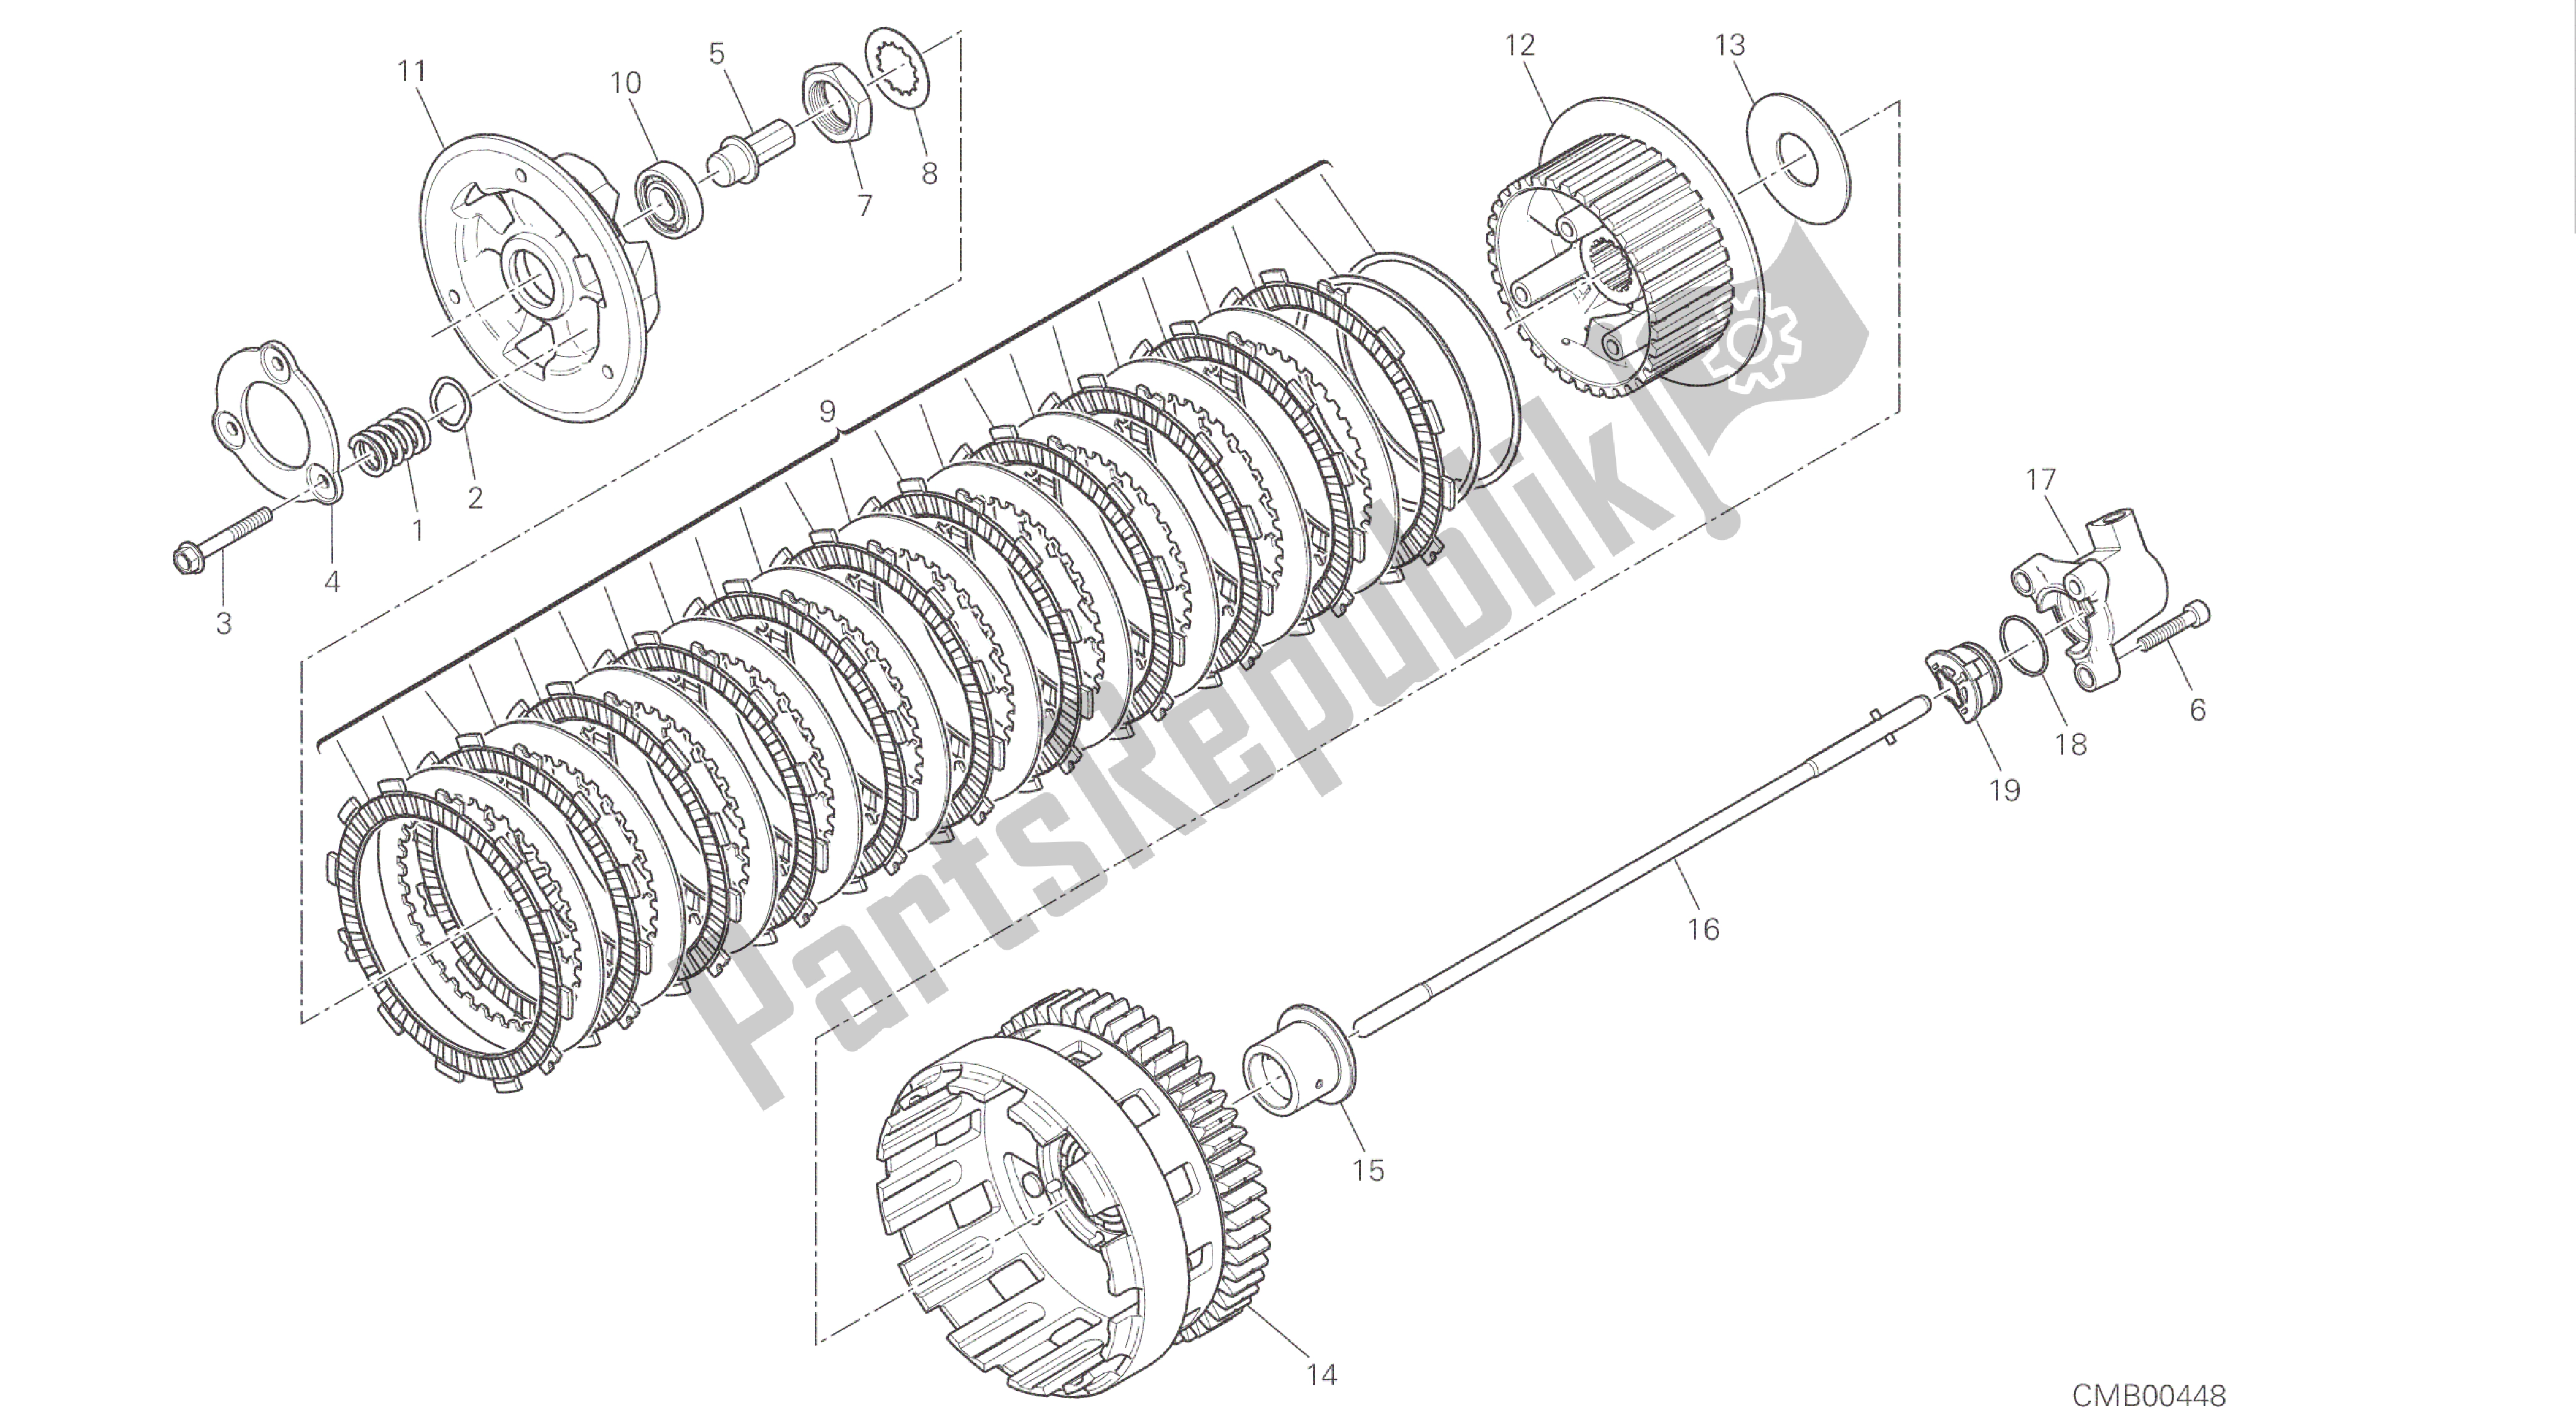 Alle onderdelen voor de Tekening 004 - Koppeling [mod: 1299s; Xst: Aus, Eur, Fra, Jap, Twn] Groepsmotor van de Ducati Panigale S ABS 1299 2016